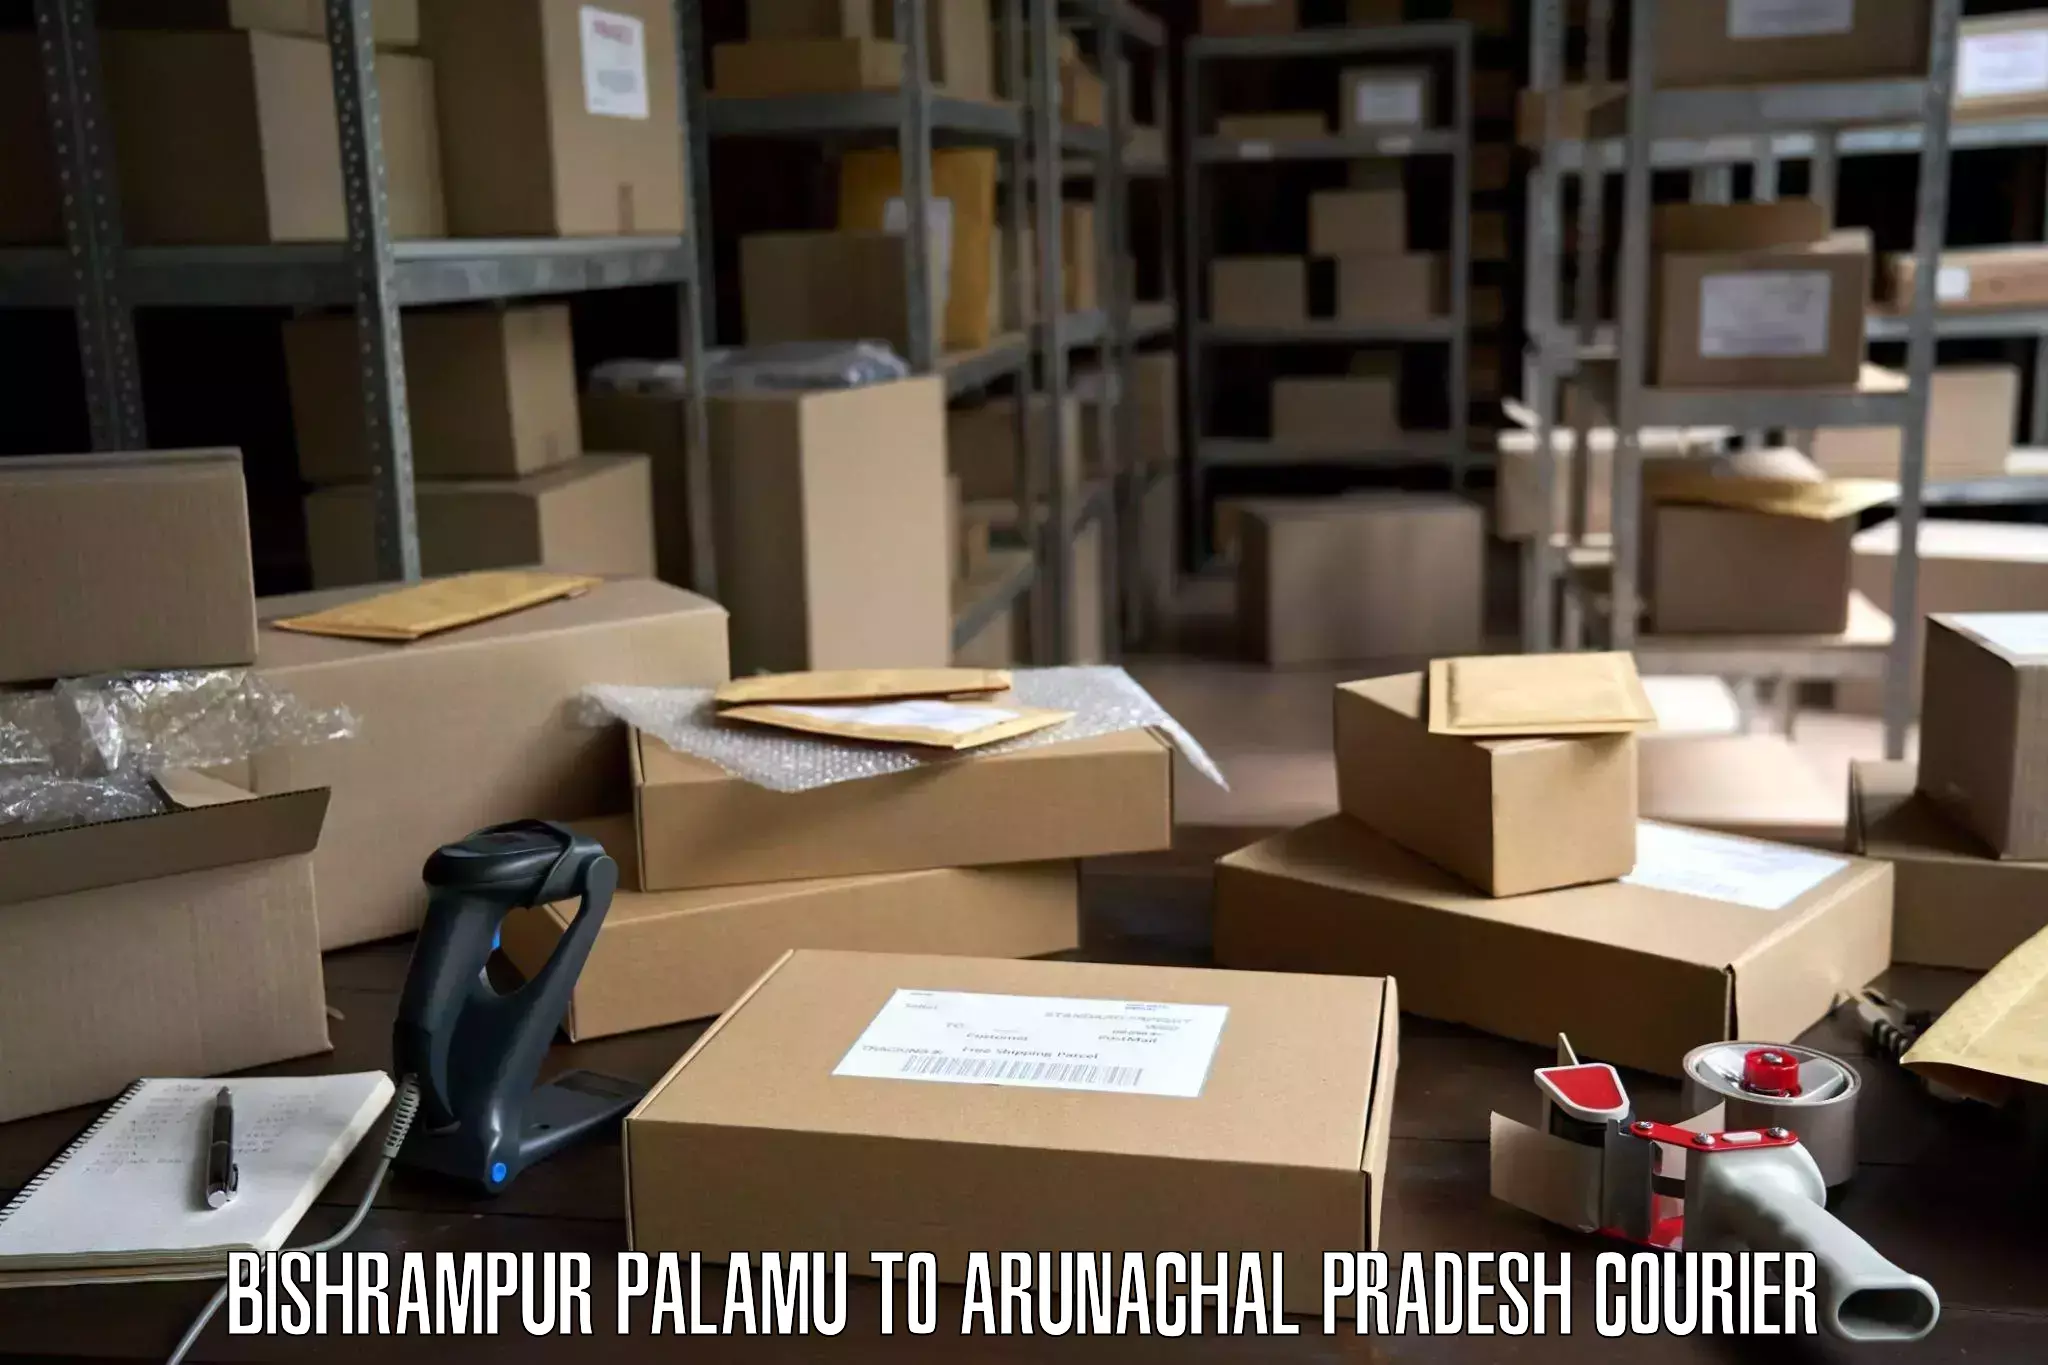 Furniture moving experts Bishrampur Palamu to Khonsa